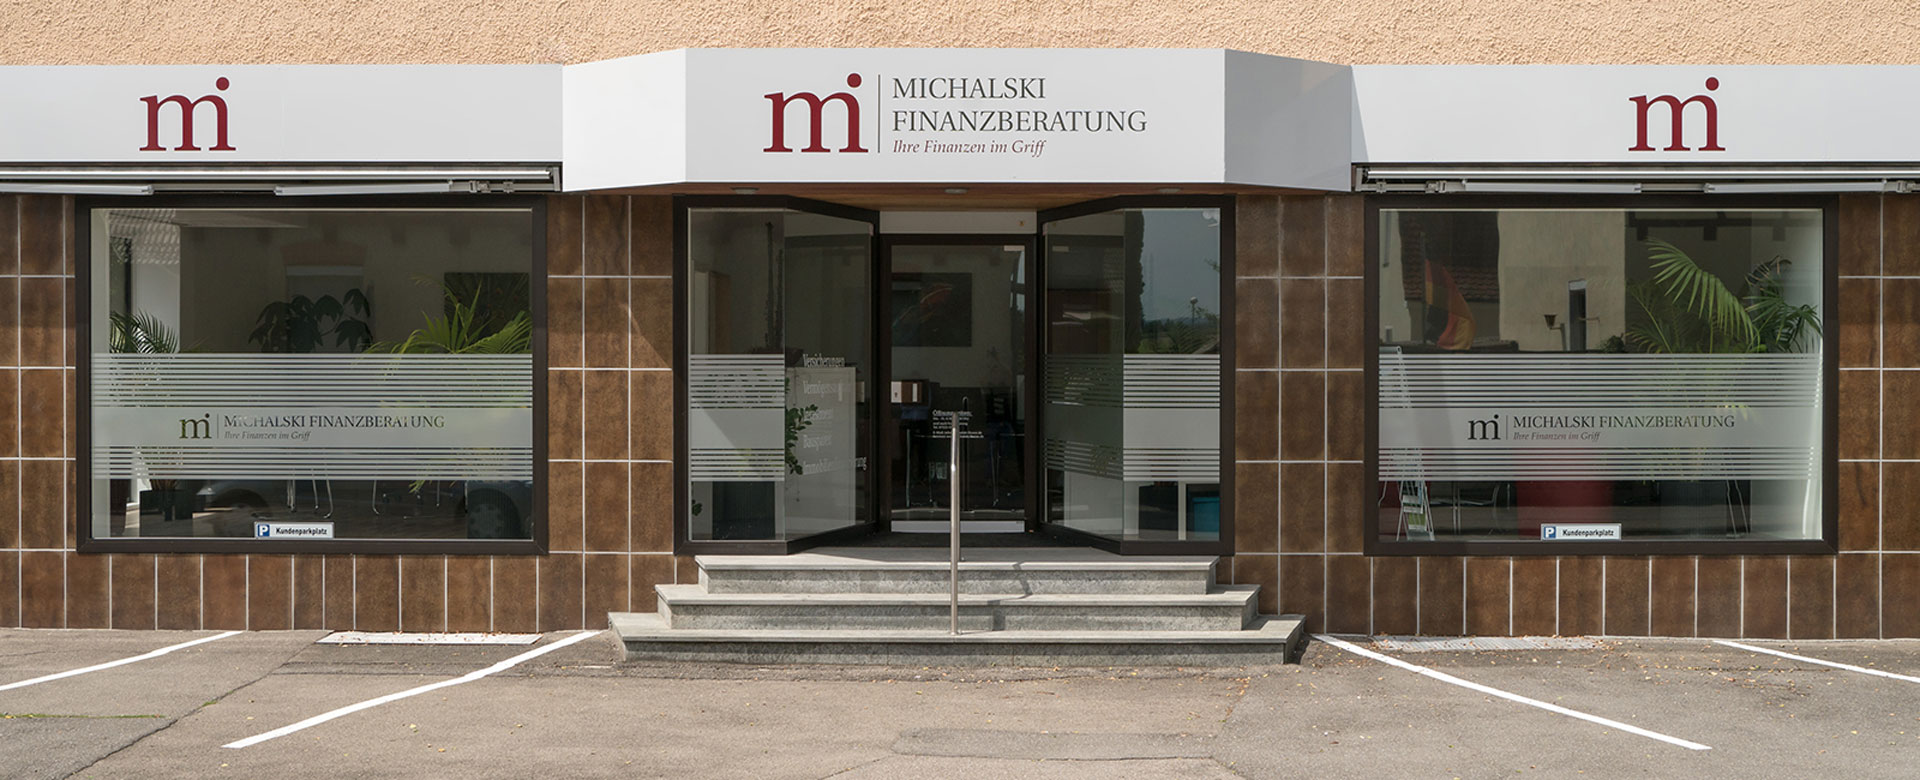 Michalski Finanzberatung in Aulendorf